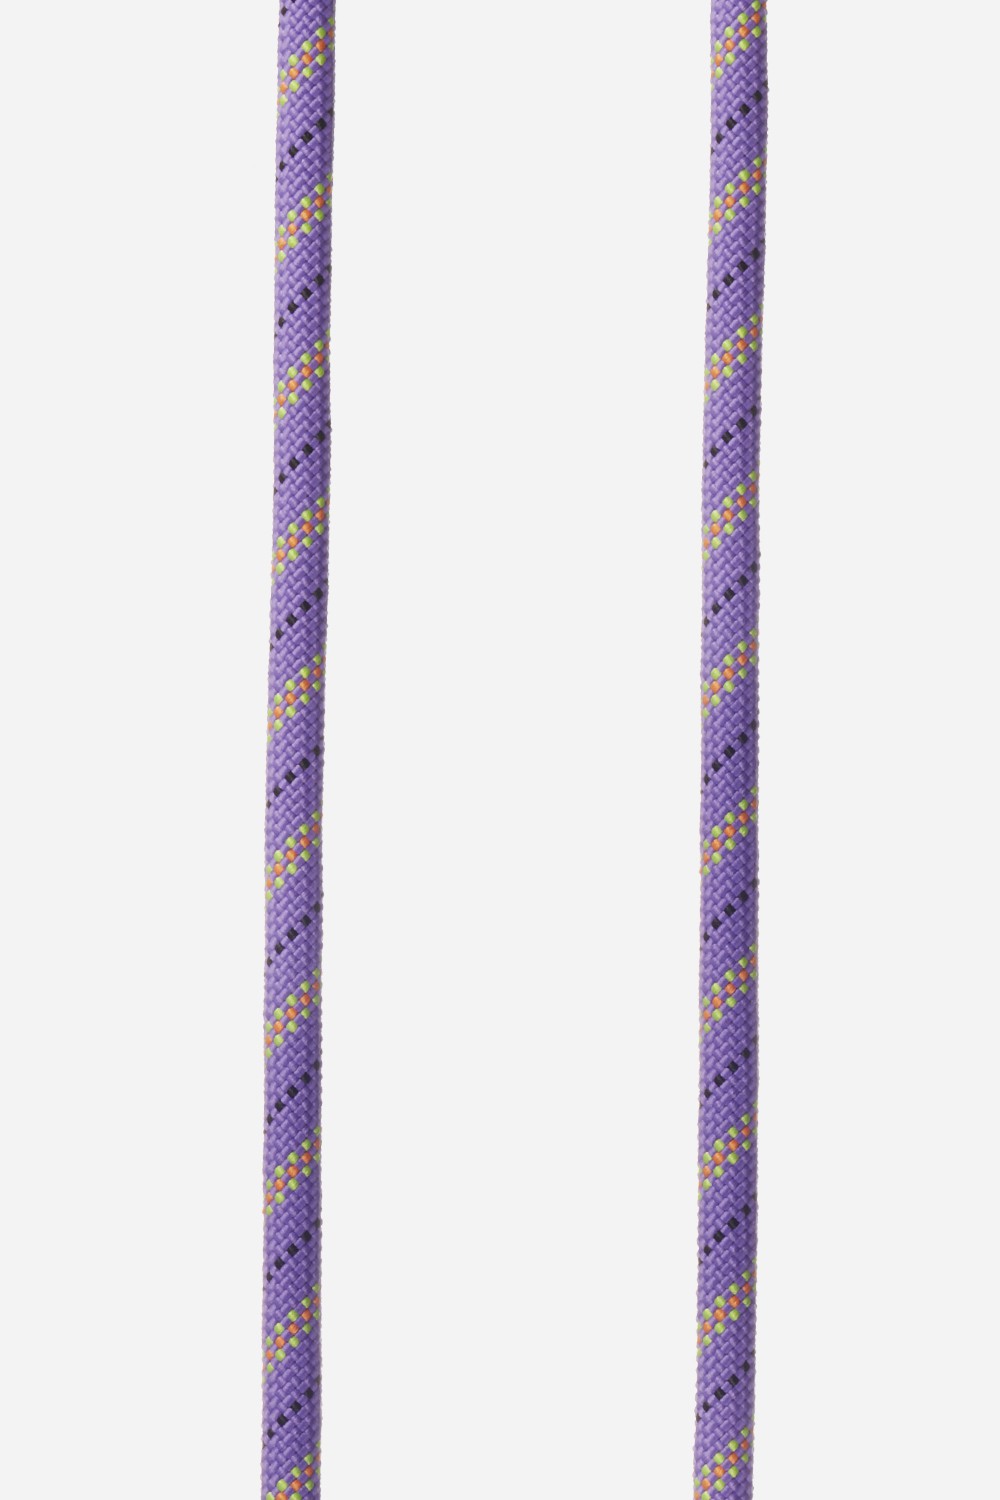 Multicolored Cord Swann Purple